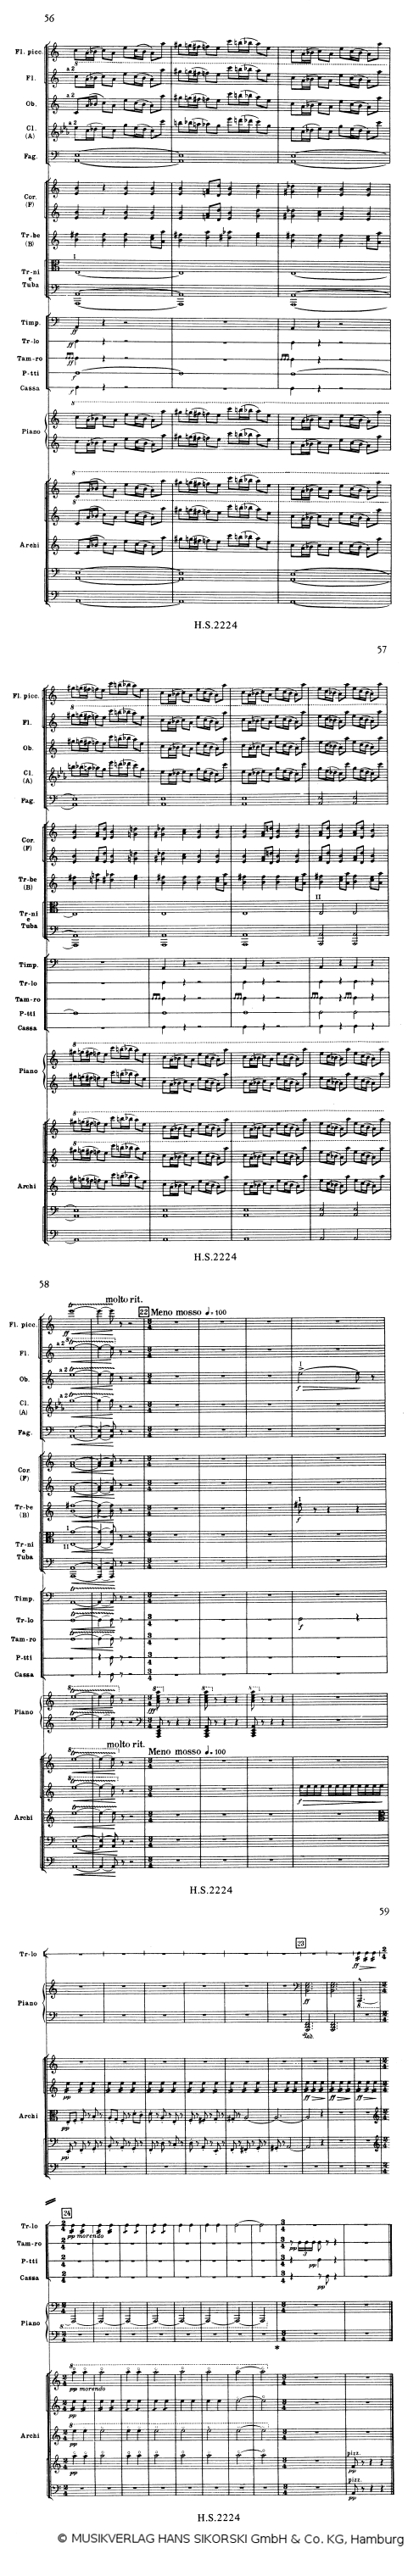 Schostakowitsch Symphonie Nr.1 2.Satz Scherzo, Ausschnitt - © MUSIKVERLAG HANS SIKORSKI GmbH & Co. KG, Hamburg - Abdruck mit frdl. Genehmigung